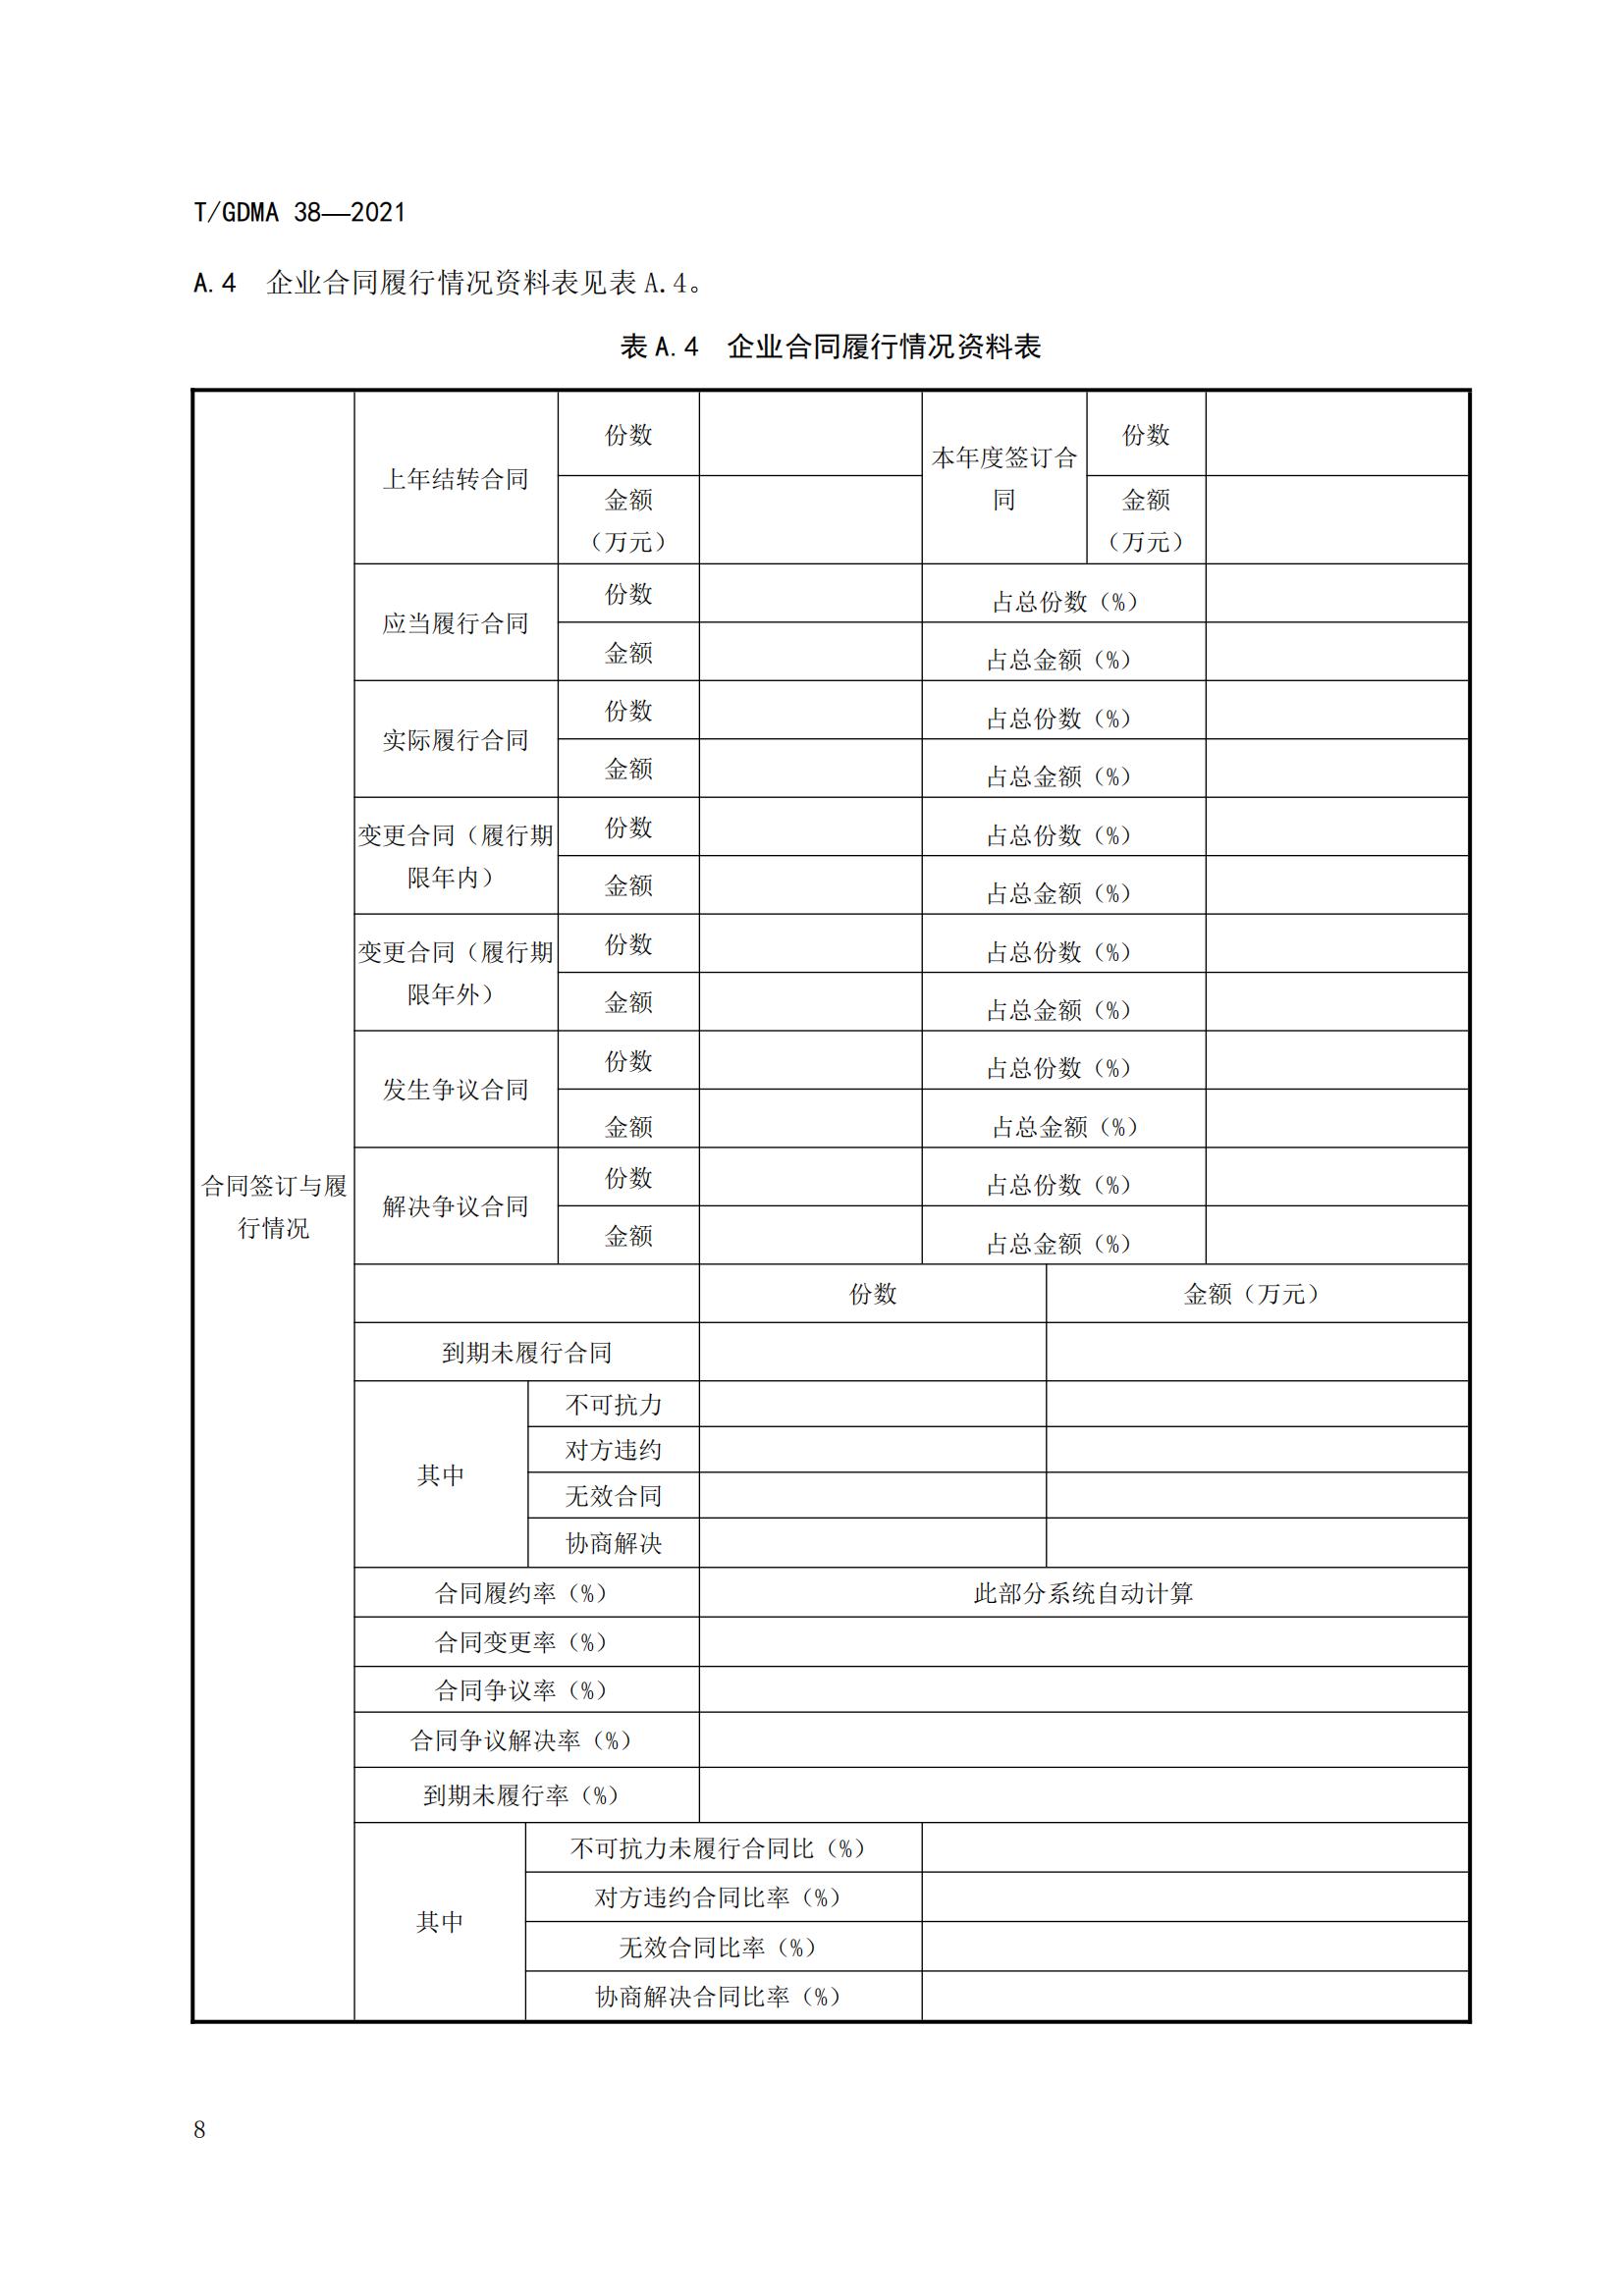 TGDMA 38 广东省守合同重信用企业等级评定规范-发布稿_11.jpg